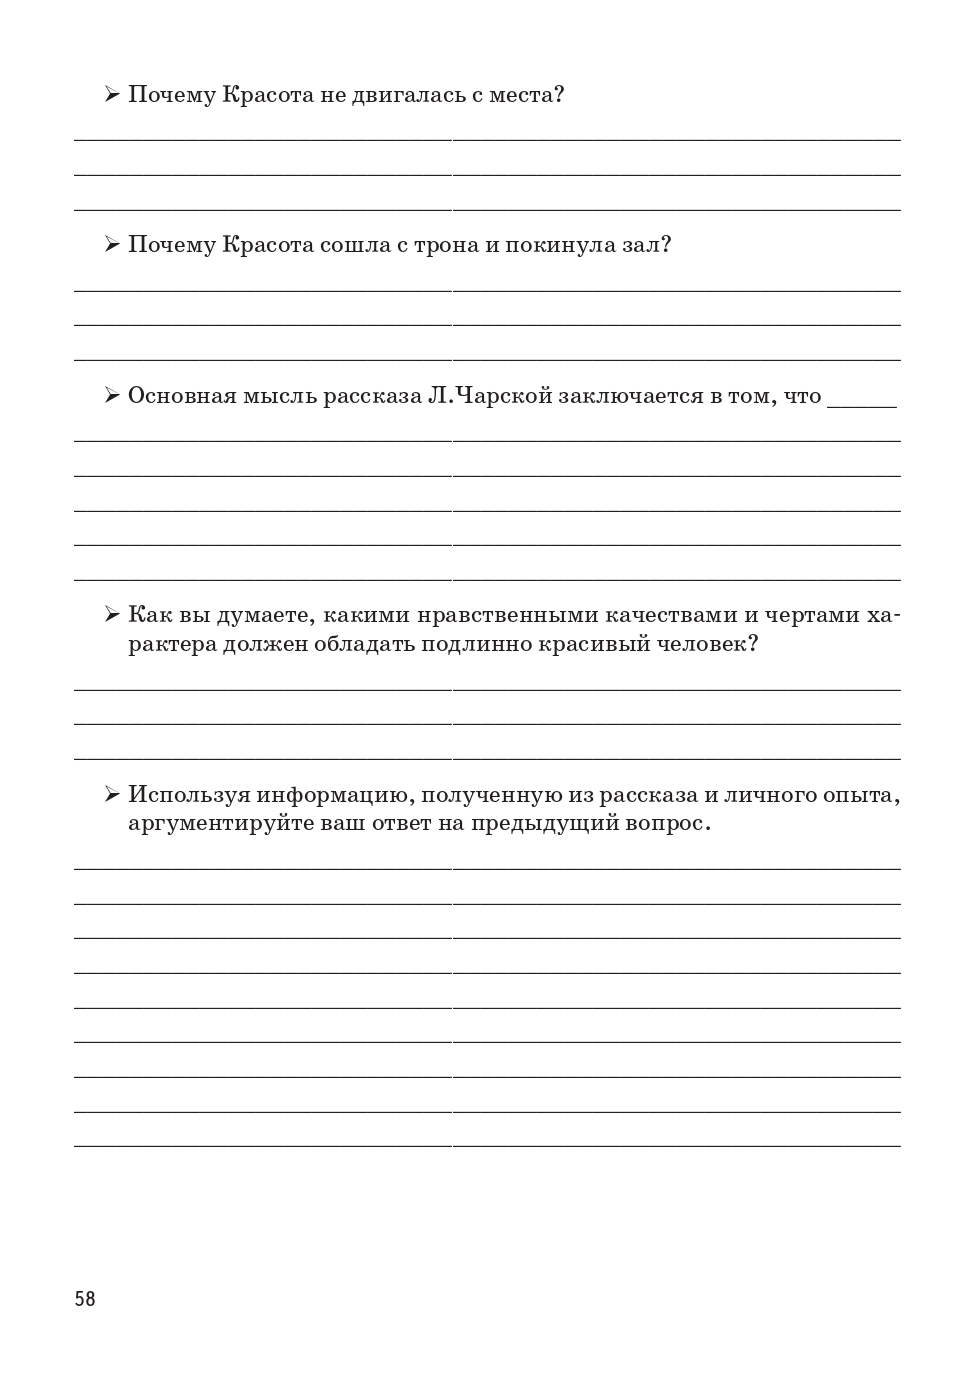 Русский язык. 9-й класс. Учимся писать сочинение: задание 13.3